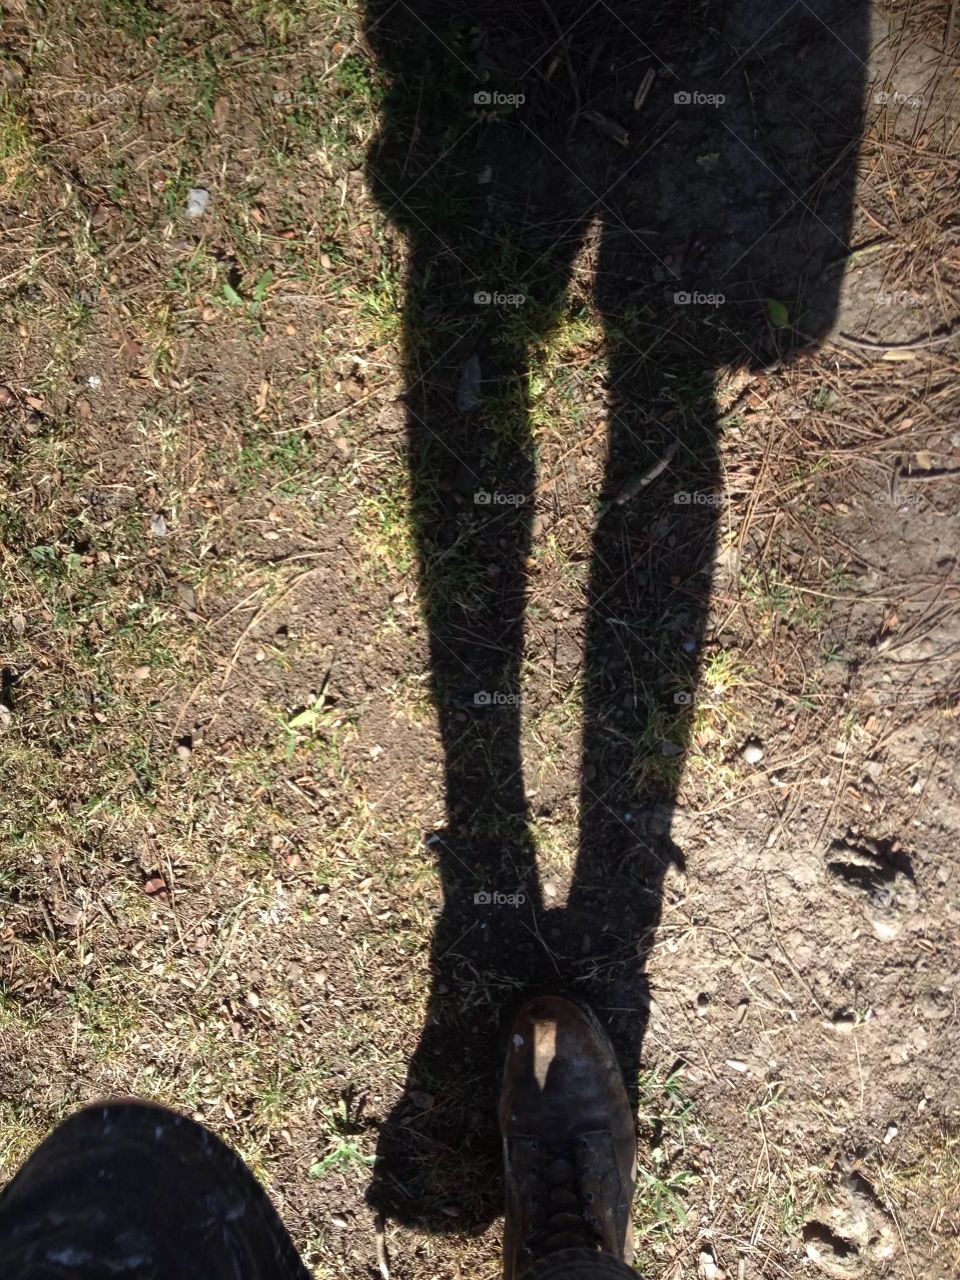 Walking shadow